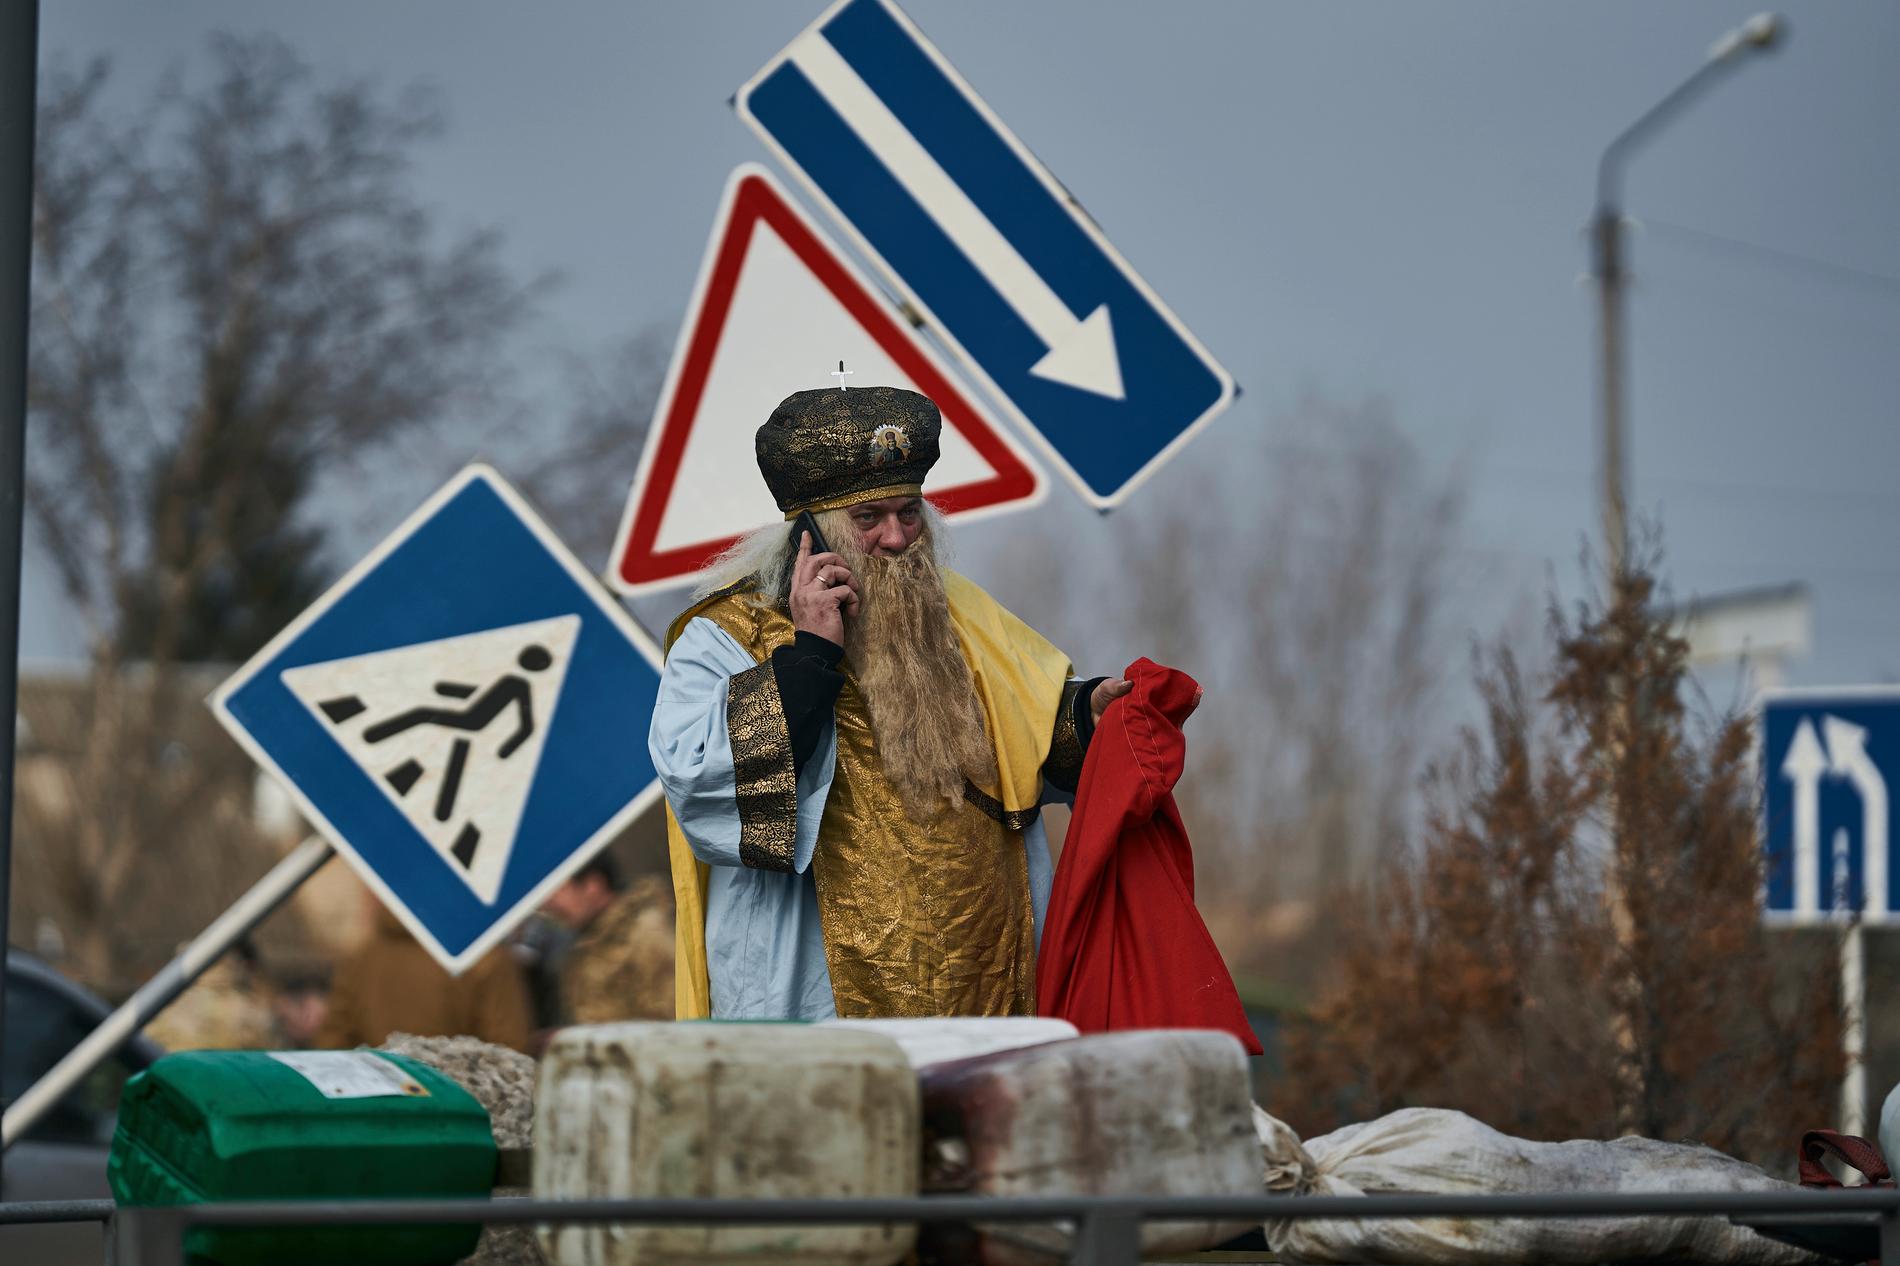 Krigsjul. Här är helgonet Sankt Nikolaus på väg för att dela ut julklappar till soldater nära fronten i Kostiantynivka i Donetsk i östra Ukraina. 